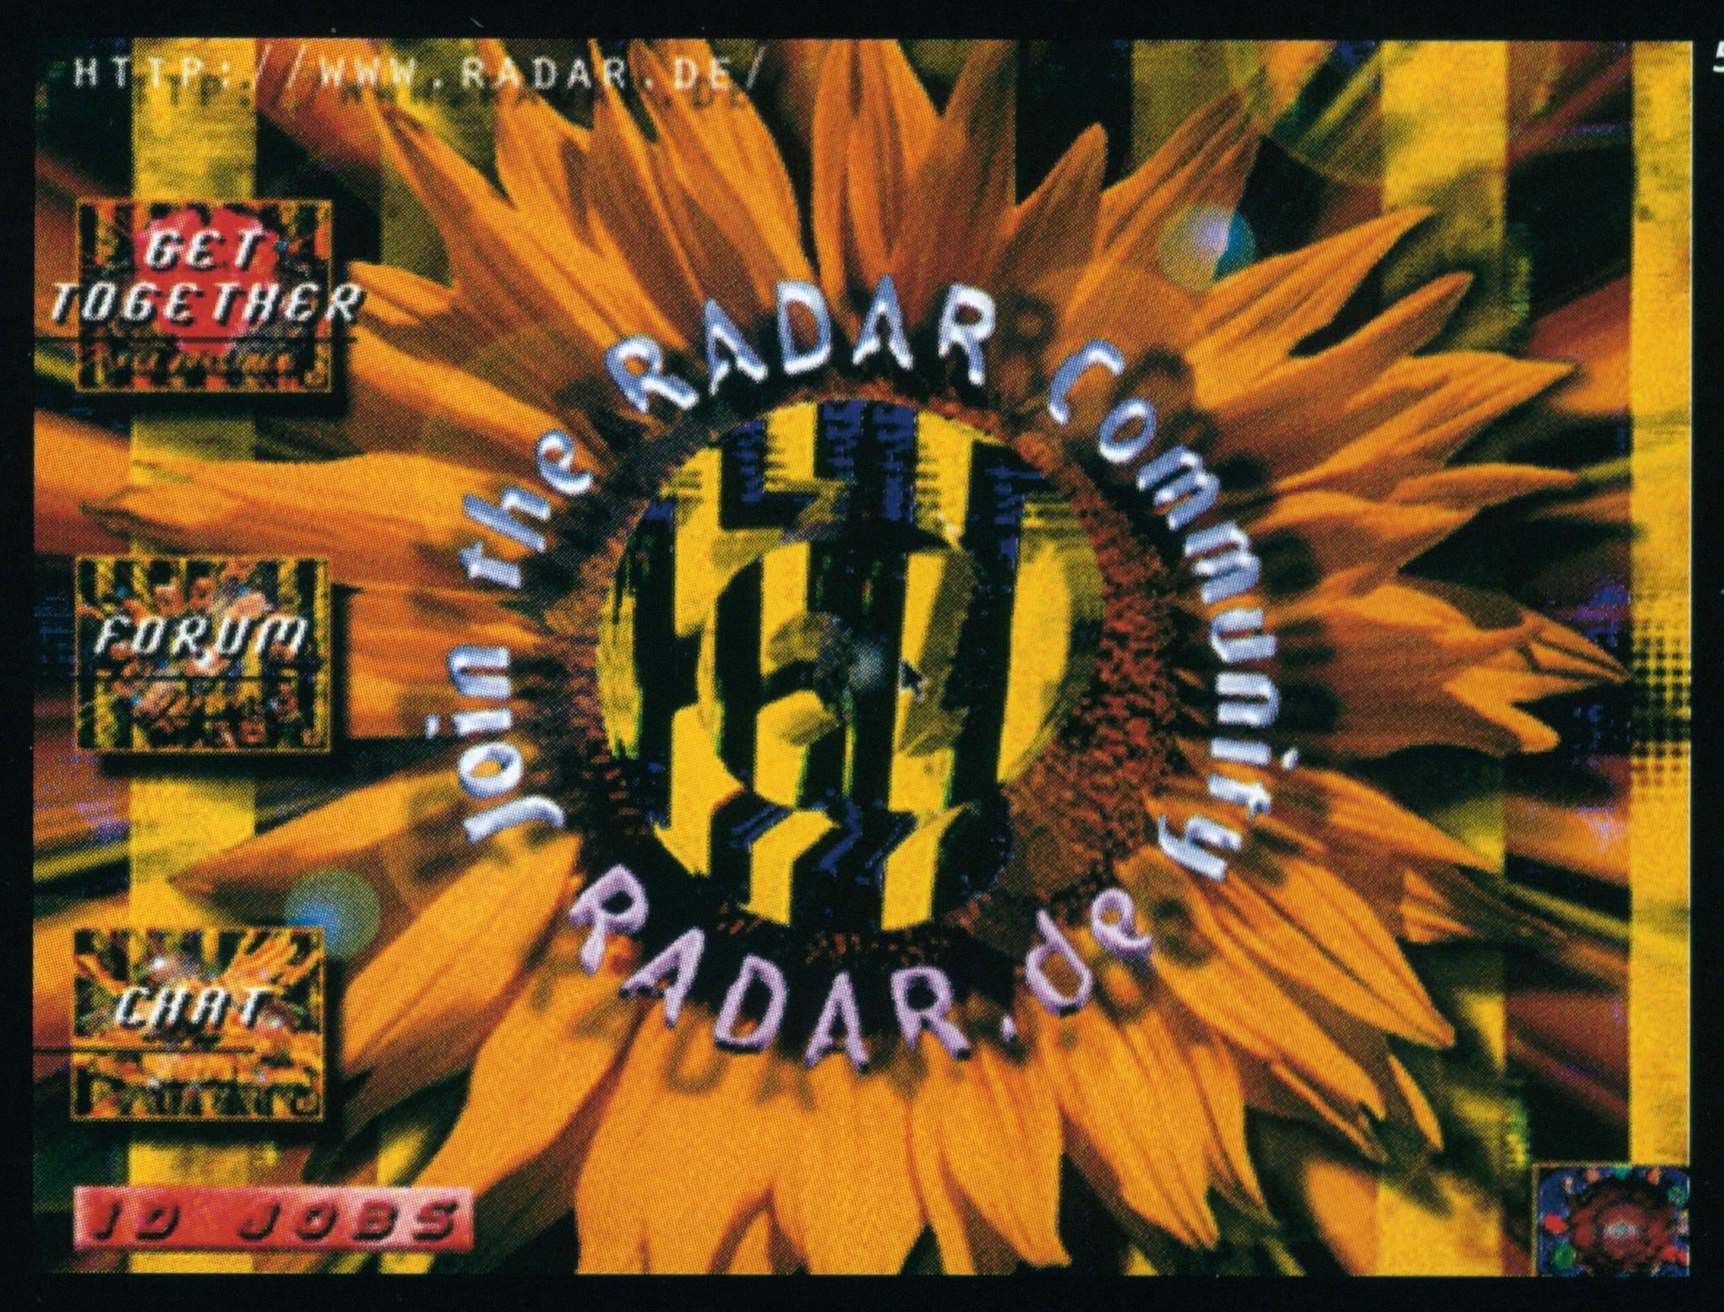 Radar Magazine Issue 2 (1996)